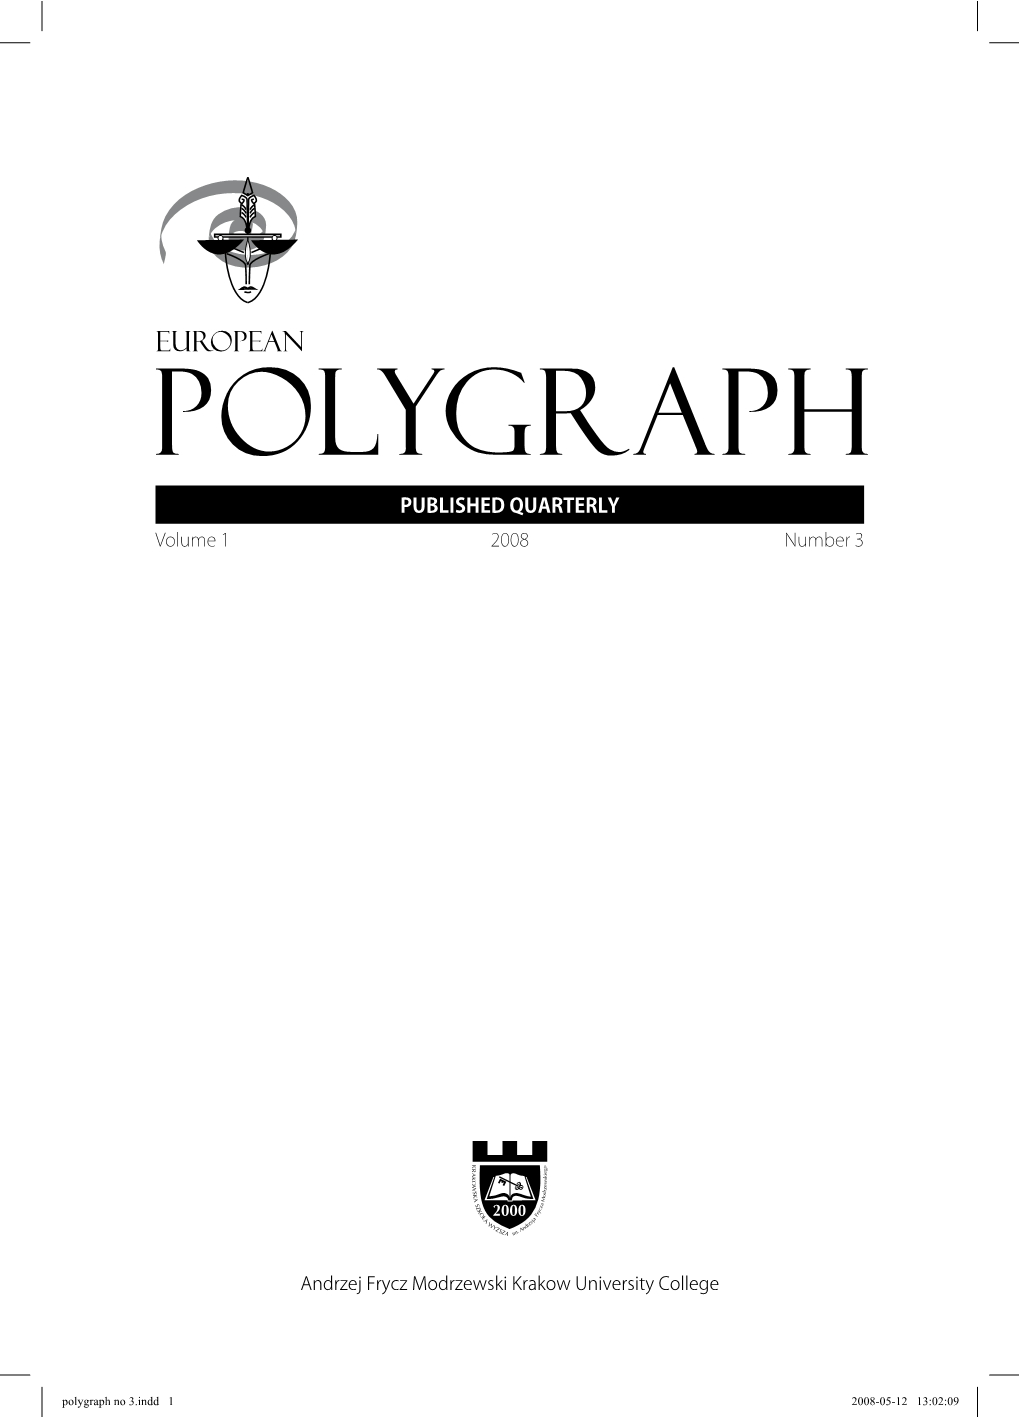 Wojciech Pasko-Porys: “Przesłuchiwanie i wywiad. Psychologia kryminalistyczna” (Interrogation and Interview: Investigative Psychology) Cover Image